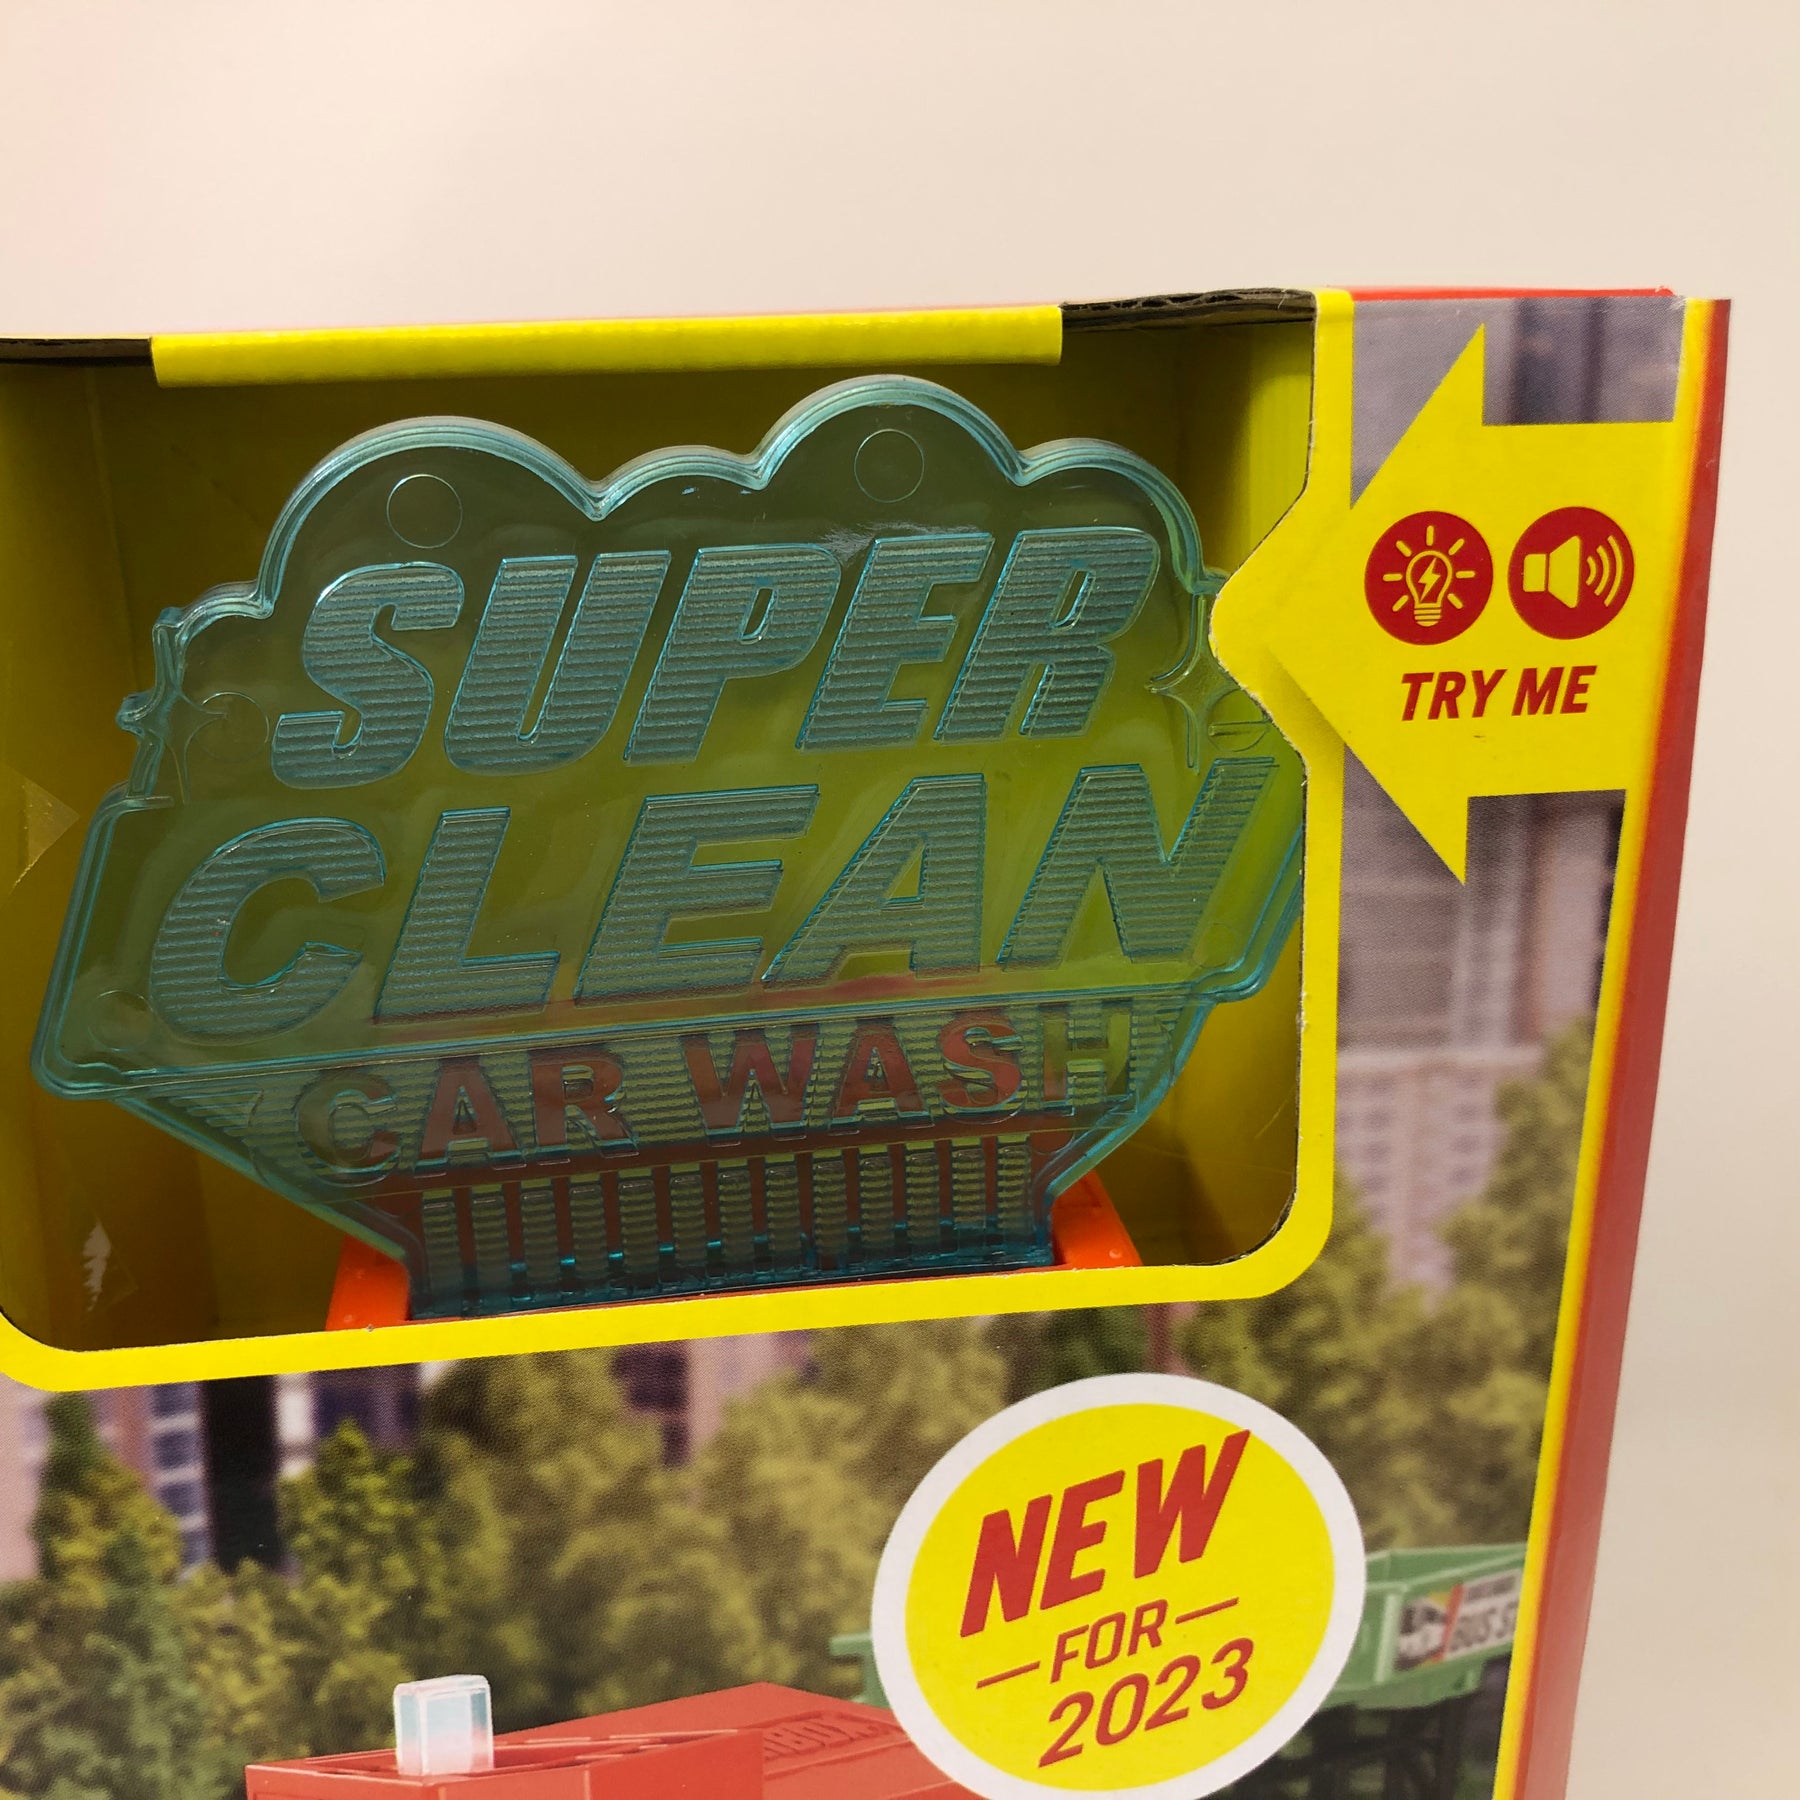 Home - Super Clean Car Wash